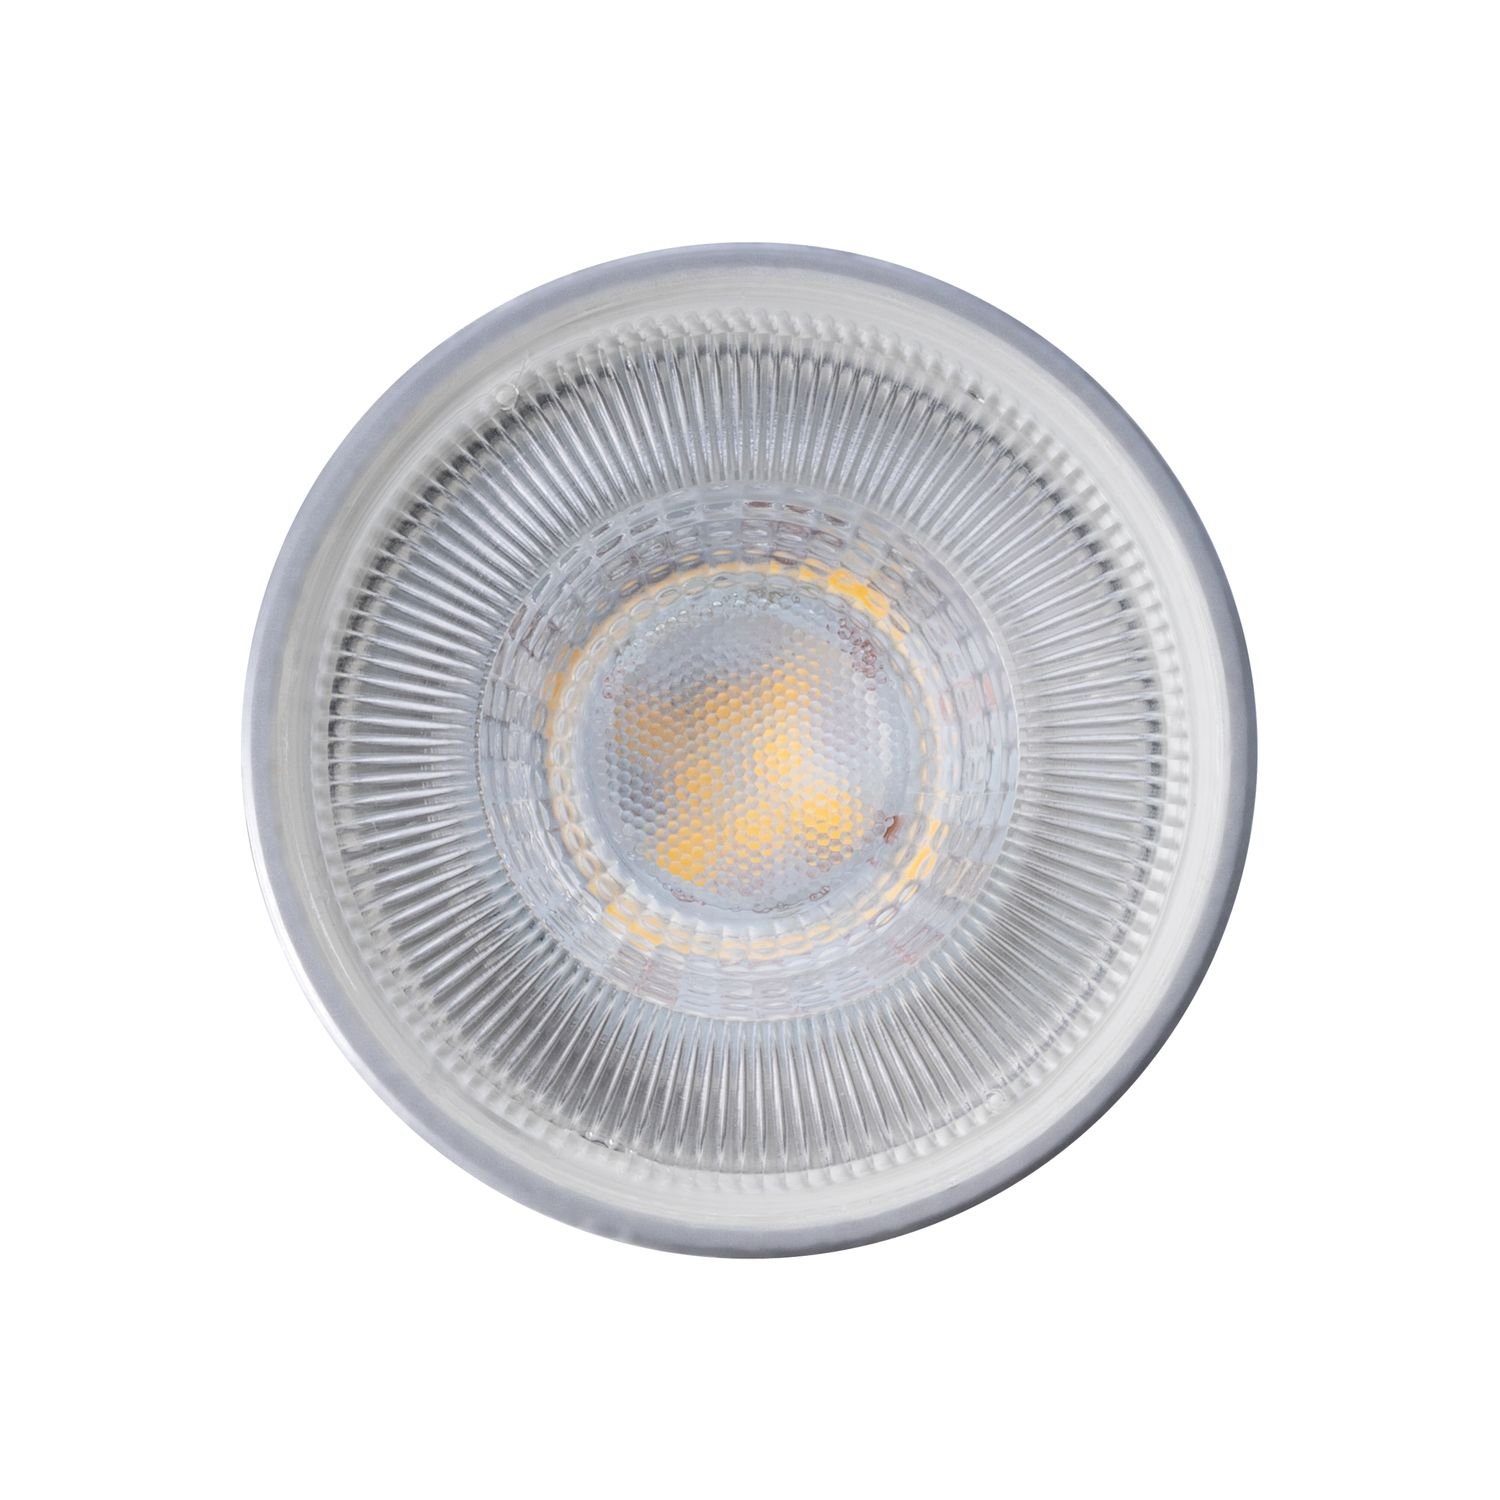 Markenstrahler von LED Weiß Einbaustrahler GU10 LED mit LED IP44 L 3er Set LEDANDO Einbaustrahler